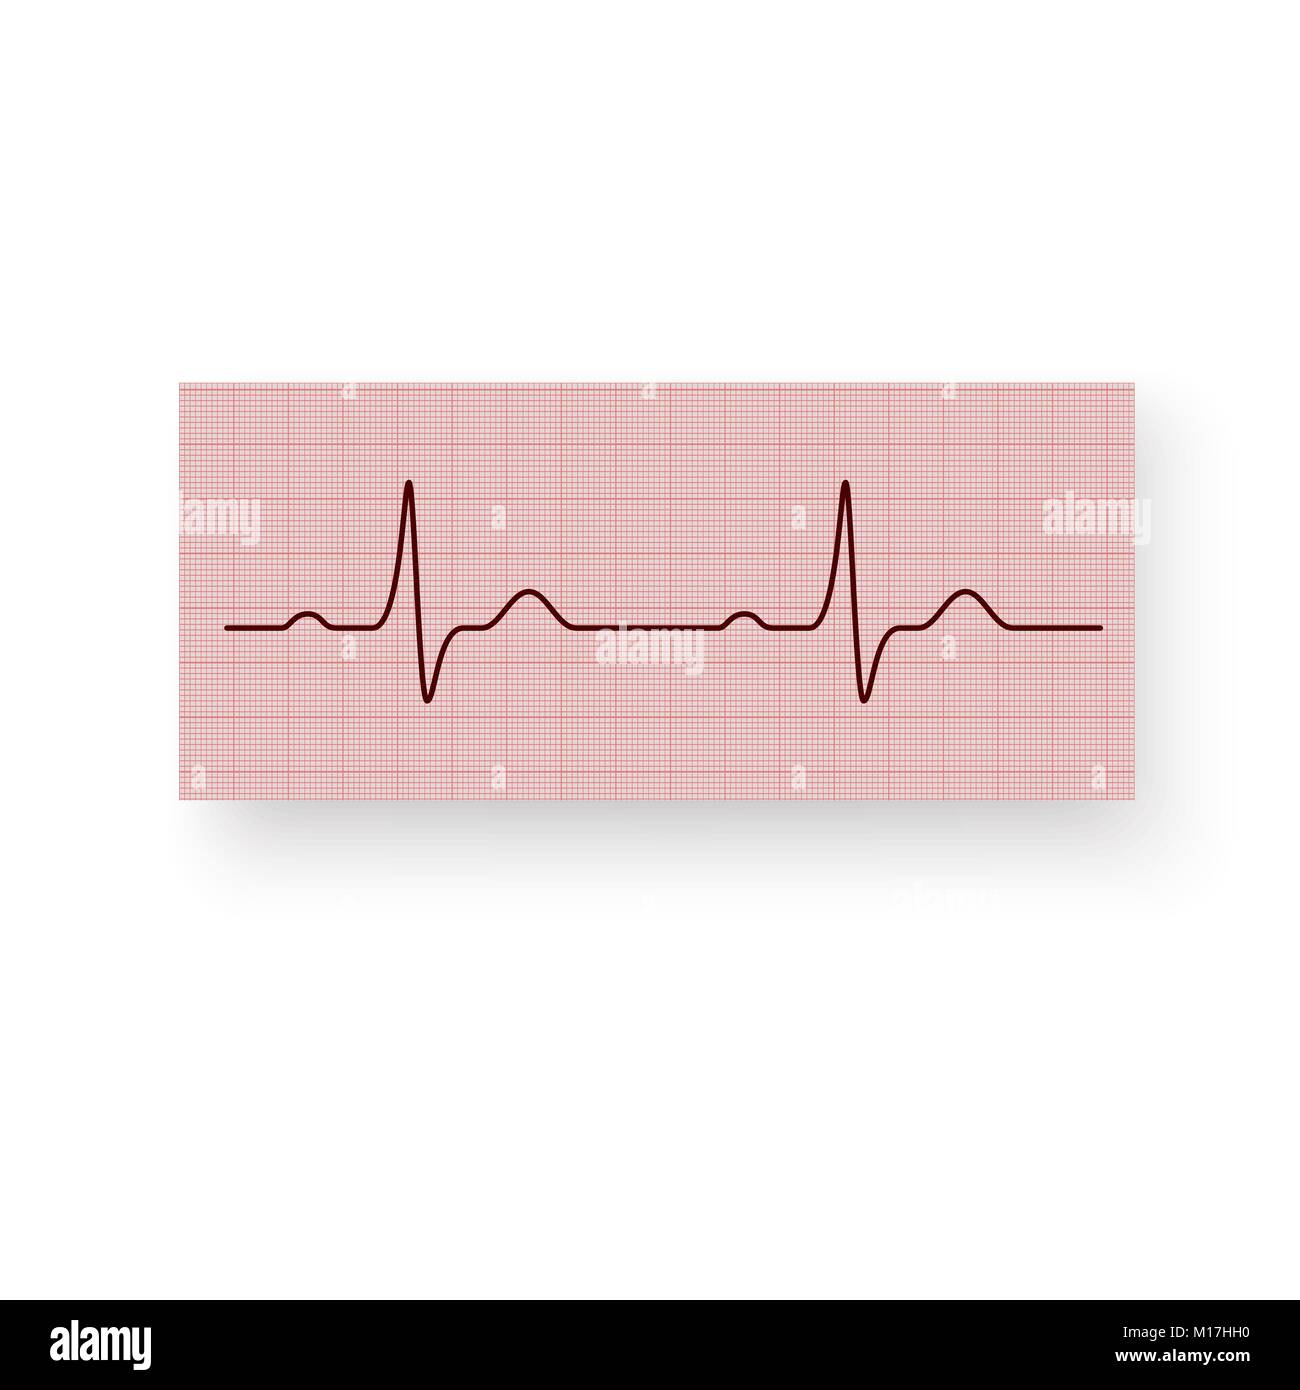 Herzfrequenz oder einen Herzschlag auf einem plotten Papier. Elektrokardiogramm des Herzens auf Millimeterpapier. Elektrokardiogramm eines gesunden Herzens. Vector Illustration isoliert o Stock Vektor